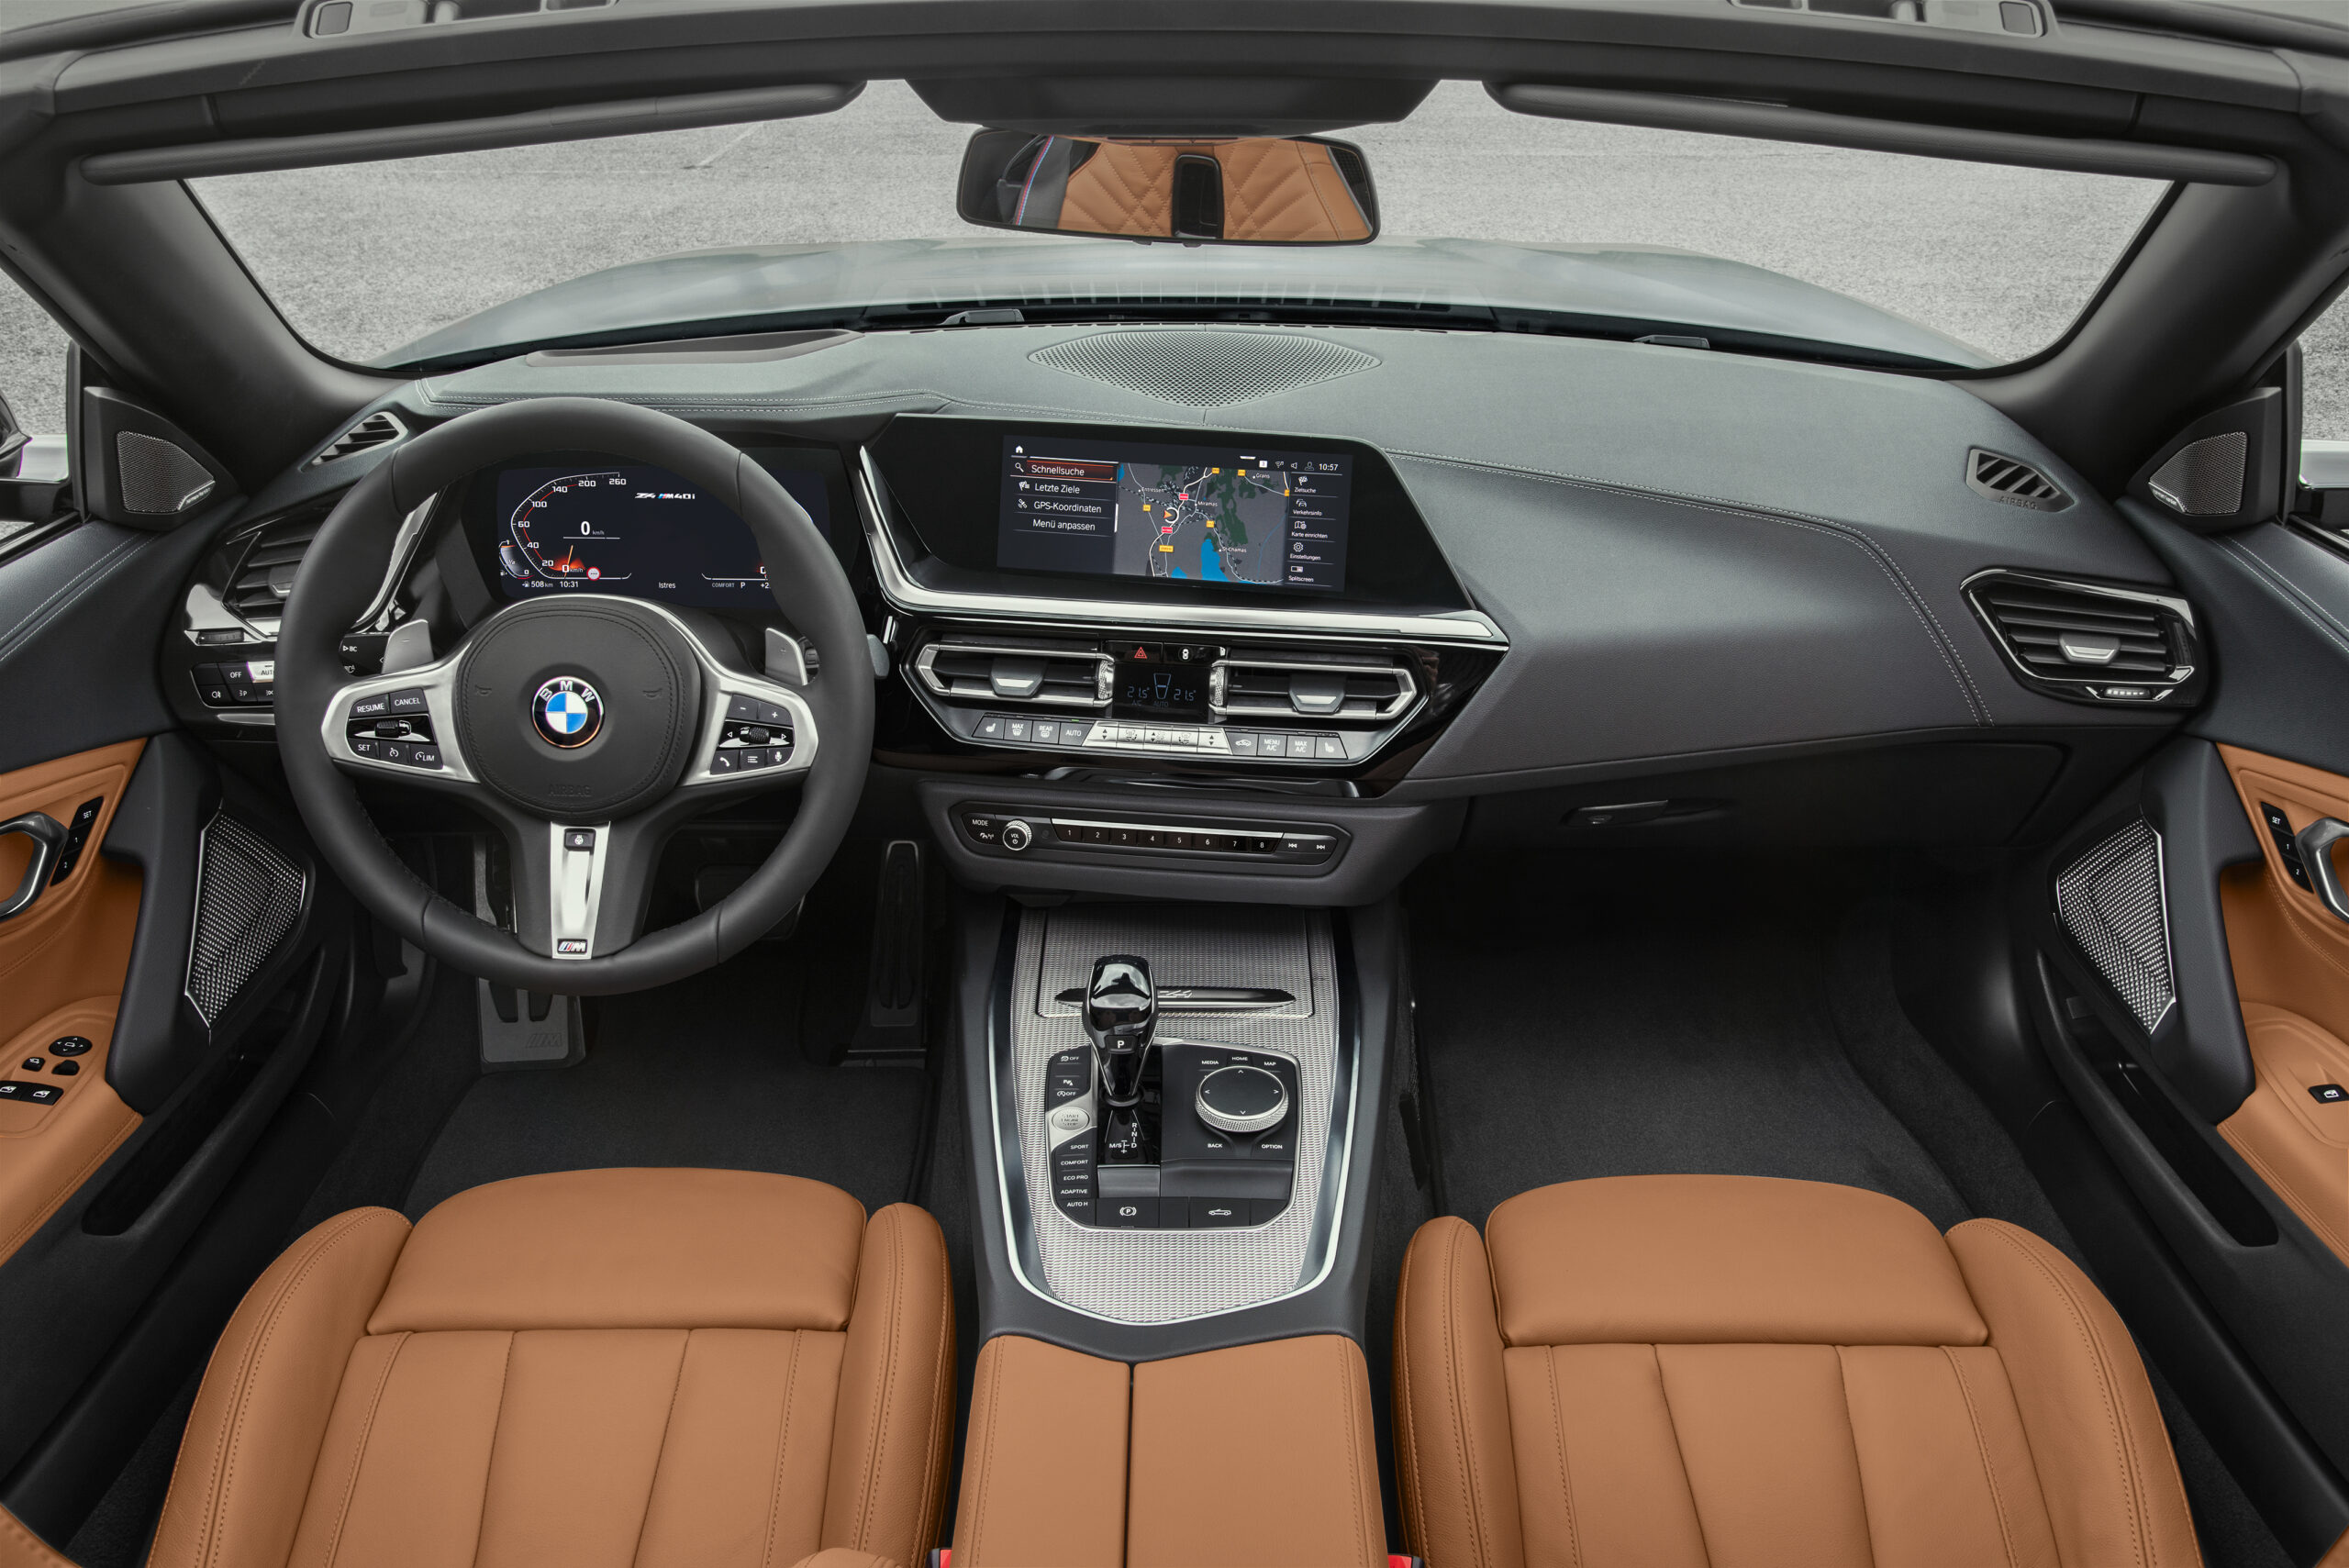 Hình ảnh nội thất xe BMW Z4 sang trọng 6